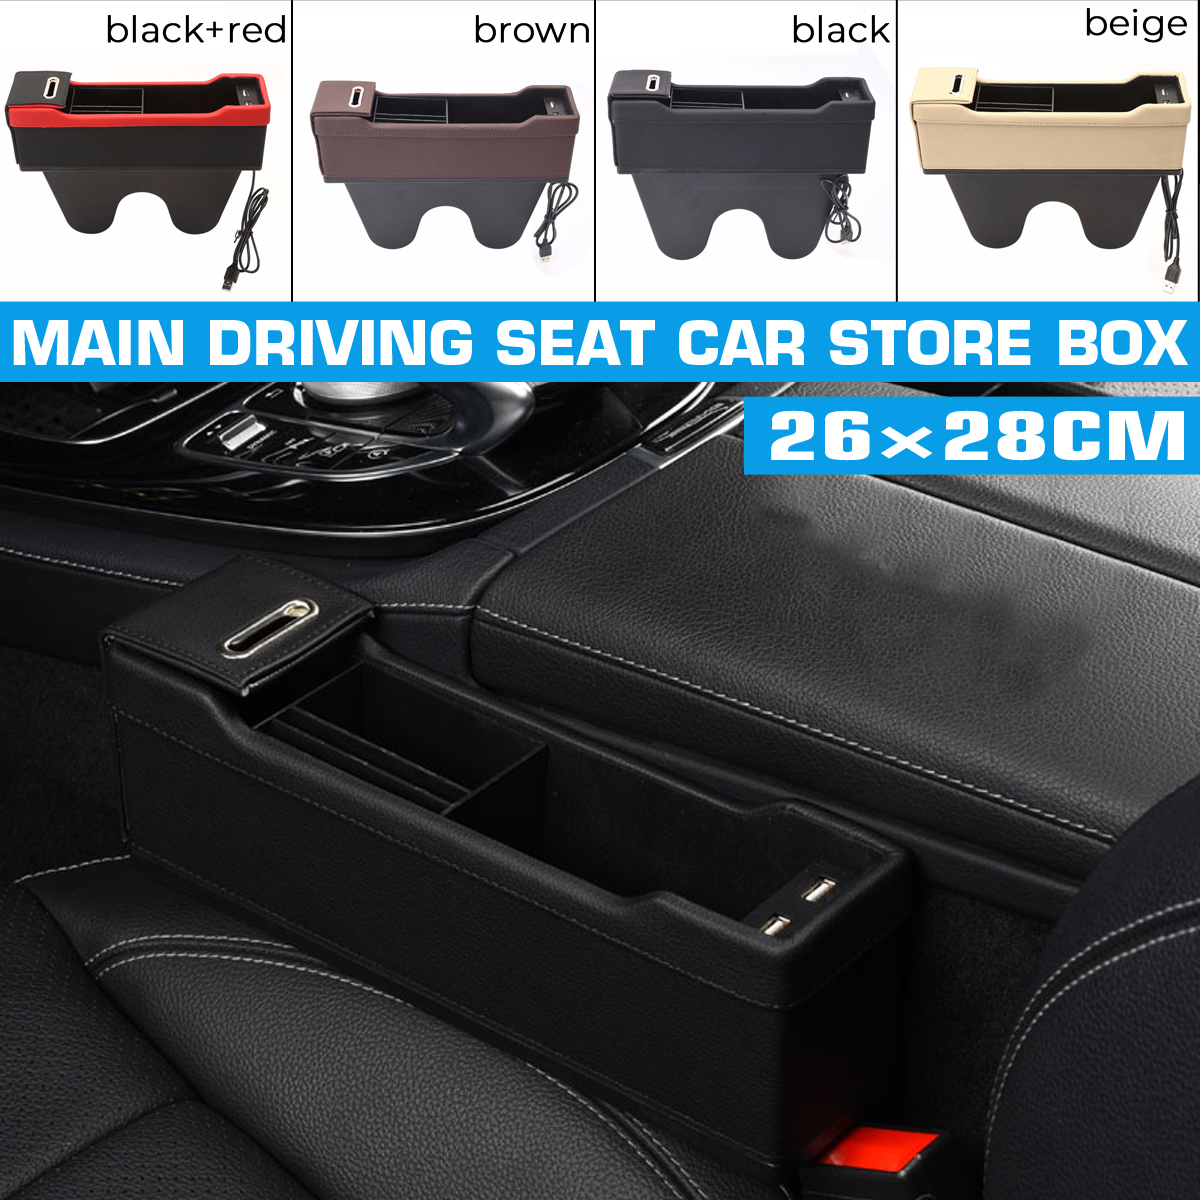 Car-Left-Seat-Gap-Leather-Phone-ID-Card-Key-Storage-Coin-Box-Car-Cradles-Organizer-with-Dual-USB-Por-1647169-2